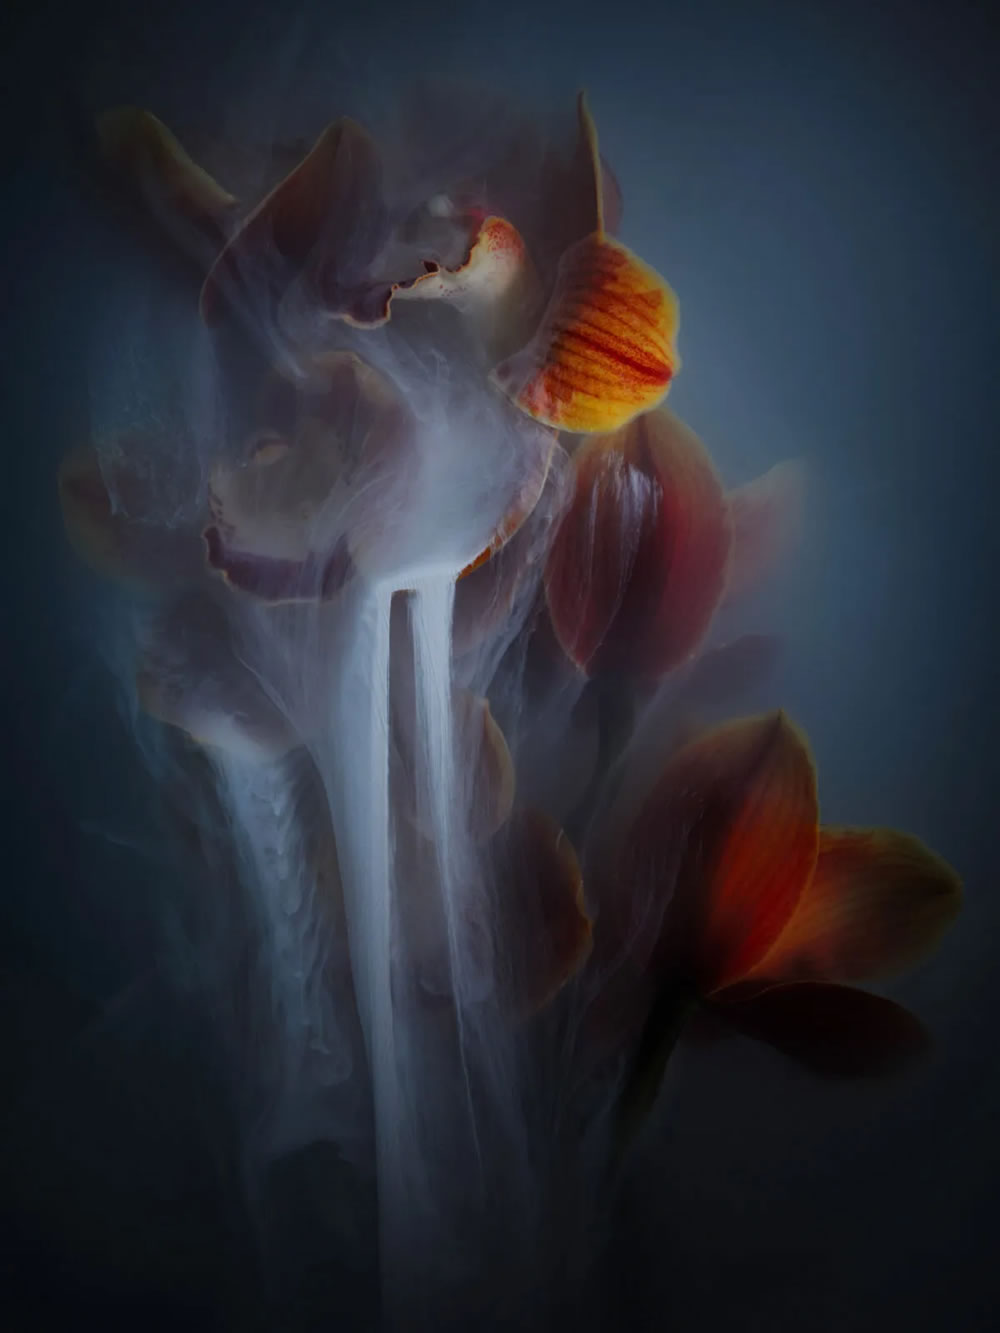 Flower still-life photography Series by Robert Peek